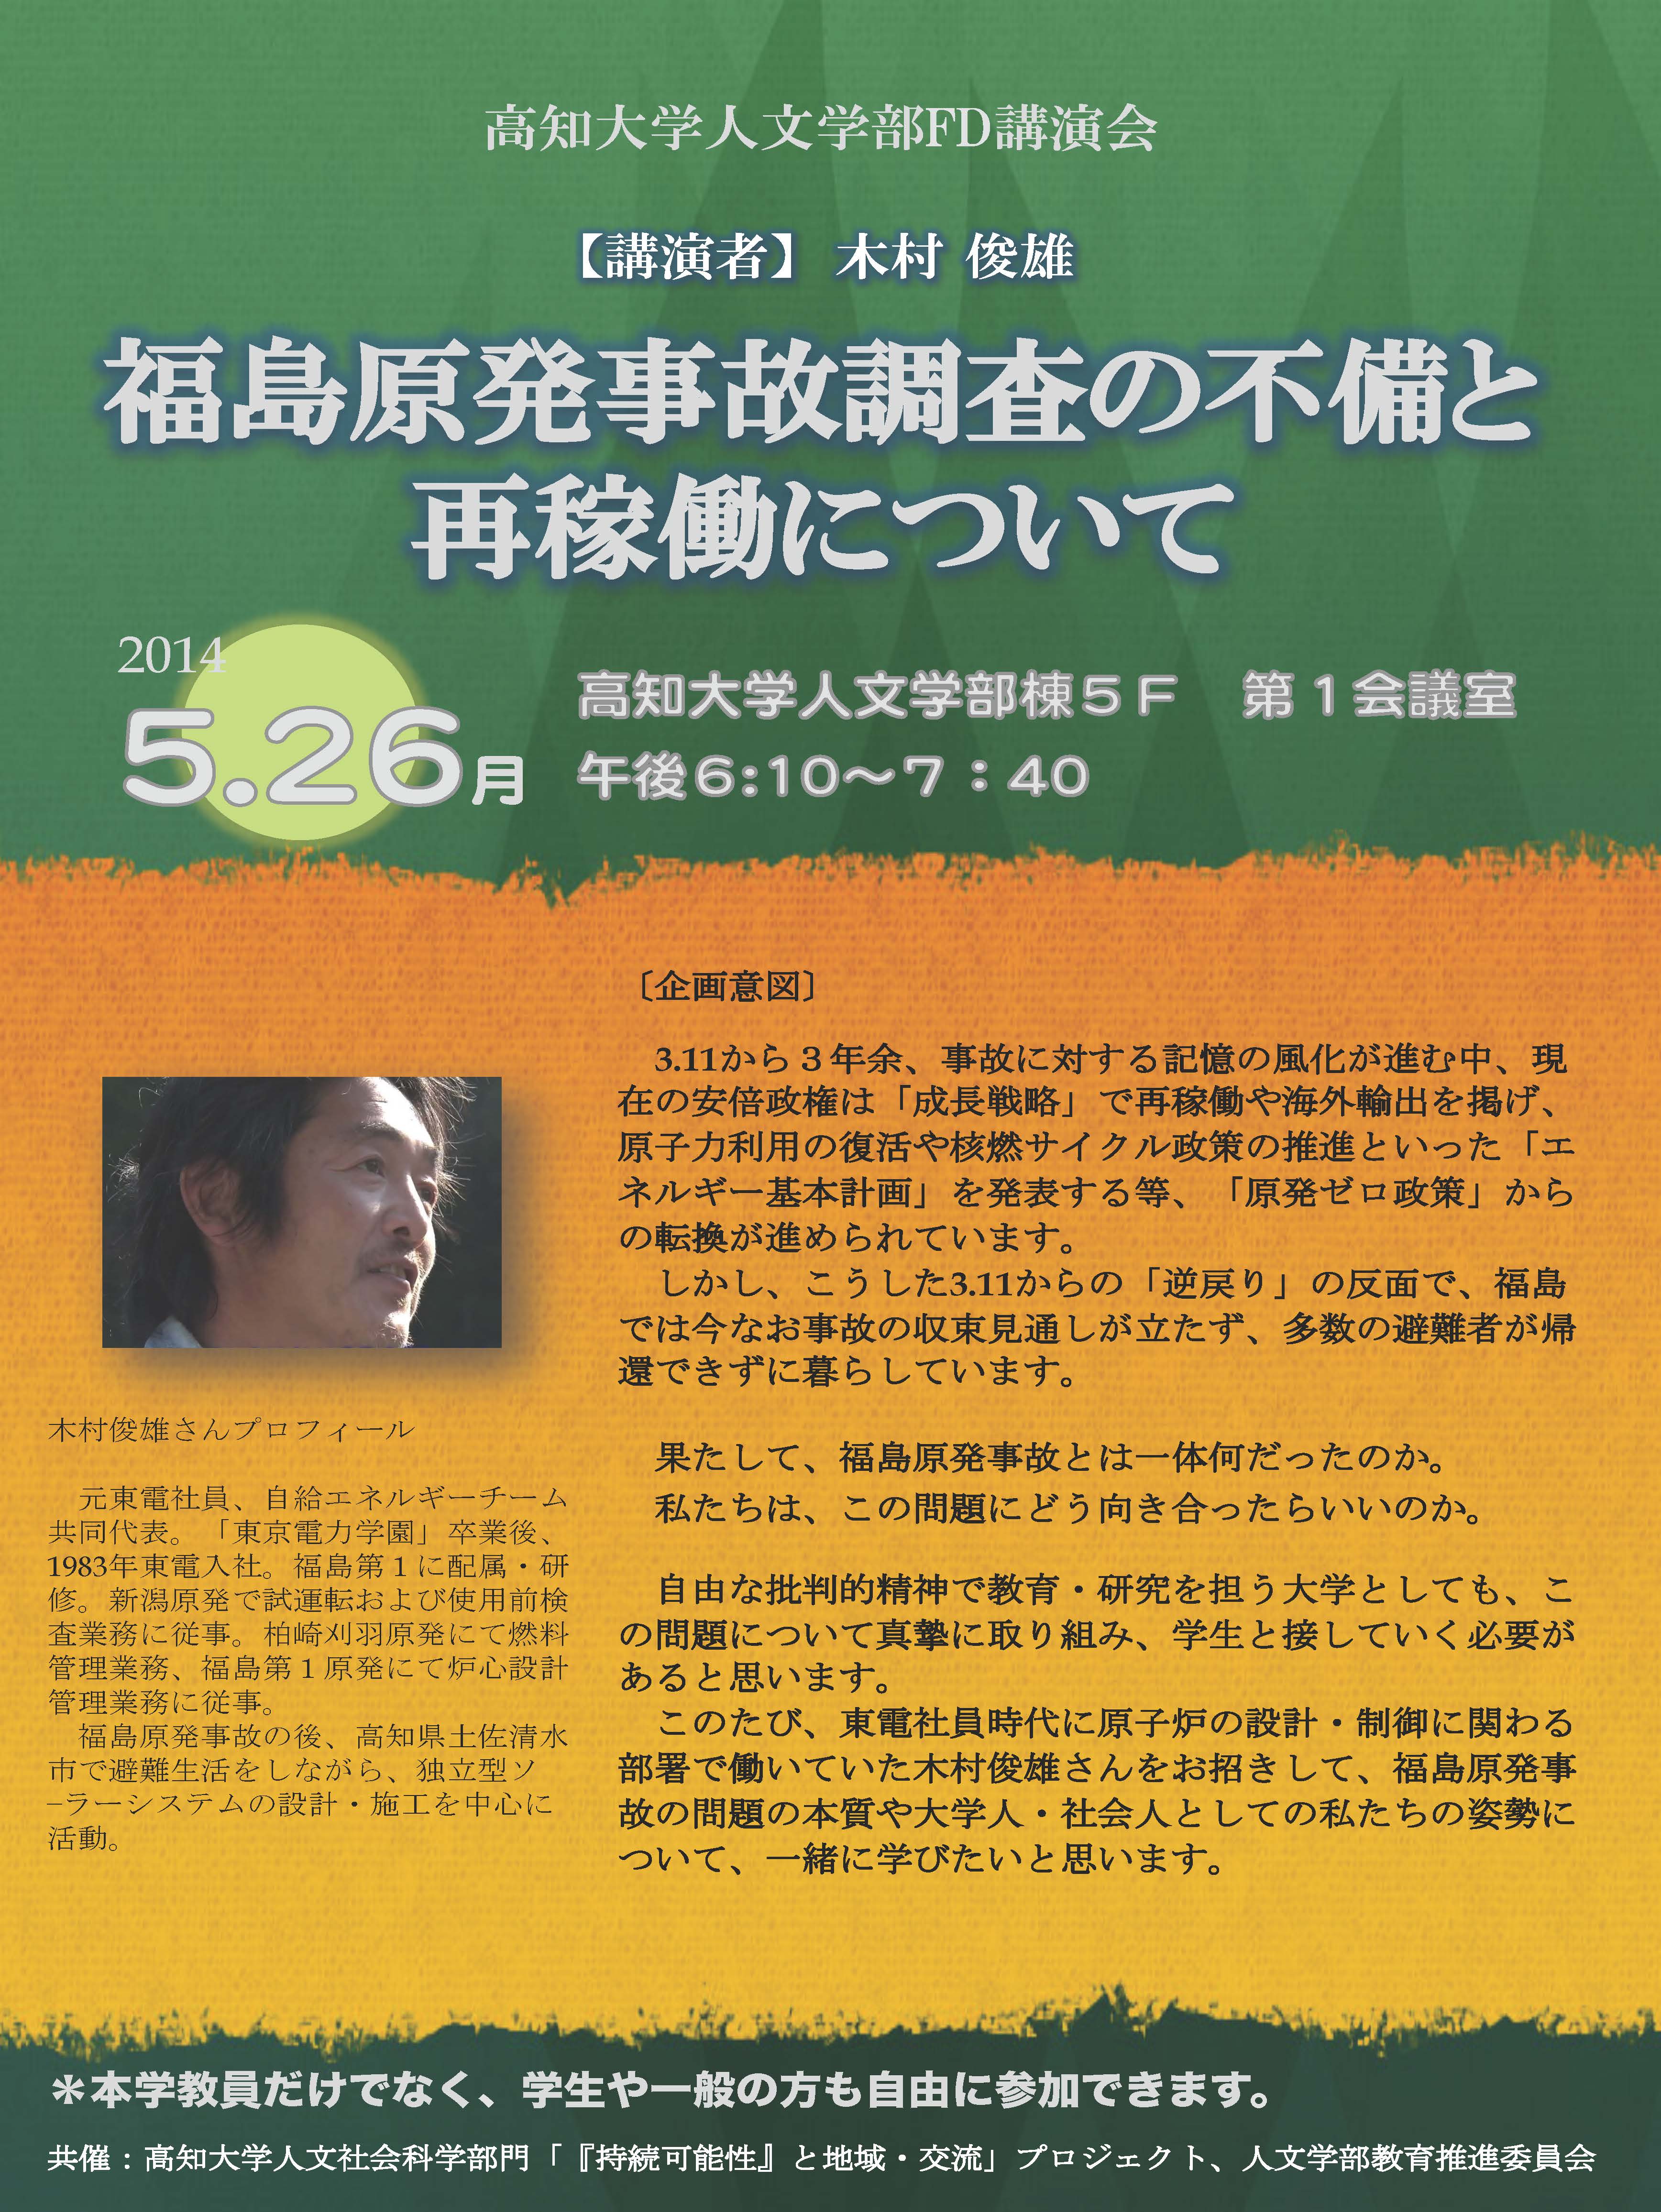 人文学部FD講演会「福島原発事故調査の不備と再稼働について」